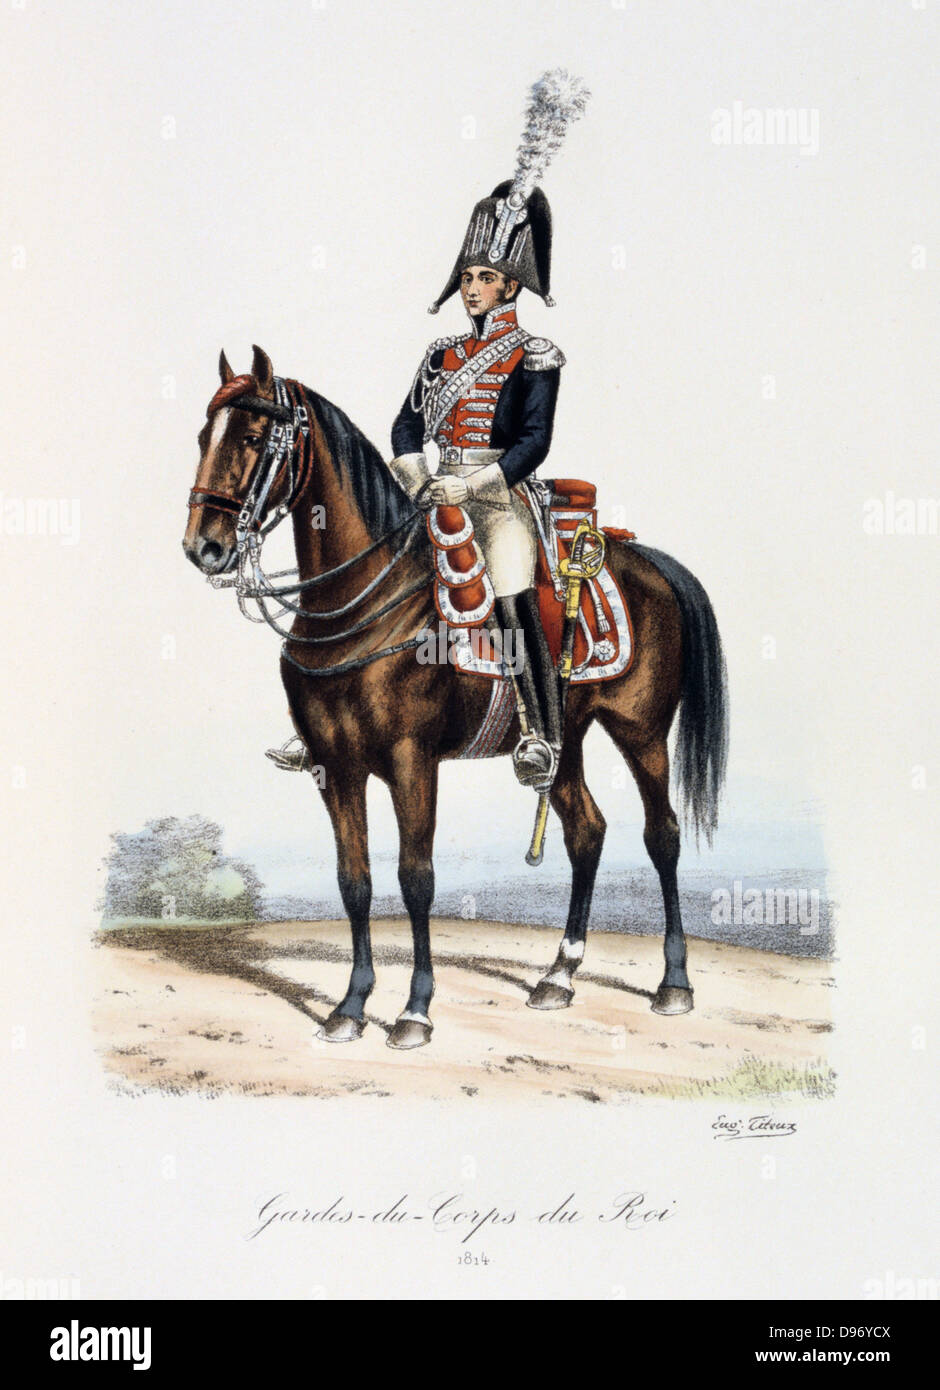 Mounted member of the Royal guard, 1814. From 'Histoire de la maison militaire du Roi de 1814 a 1830' by Eugene Titeux, Paris, 1890. Stock Photo